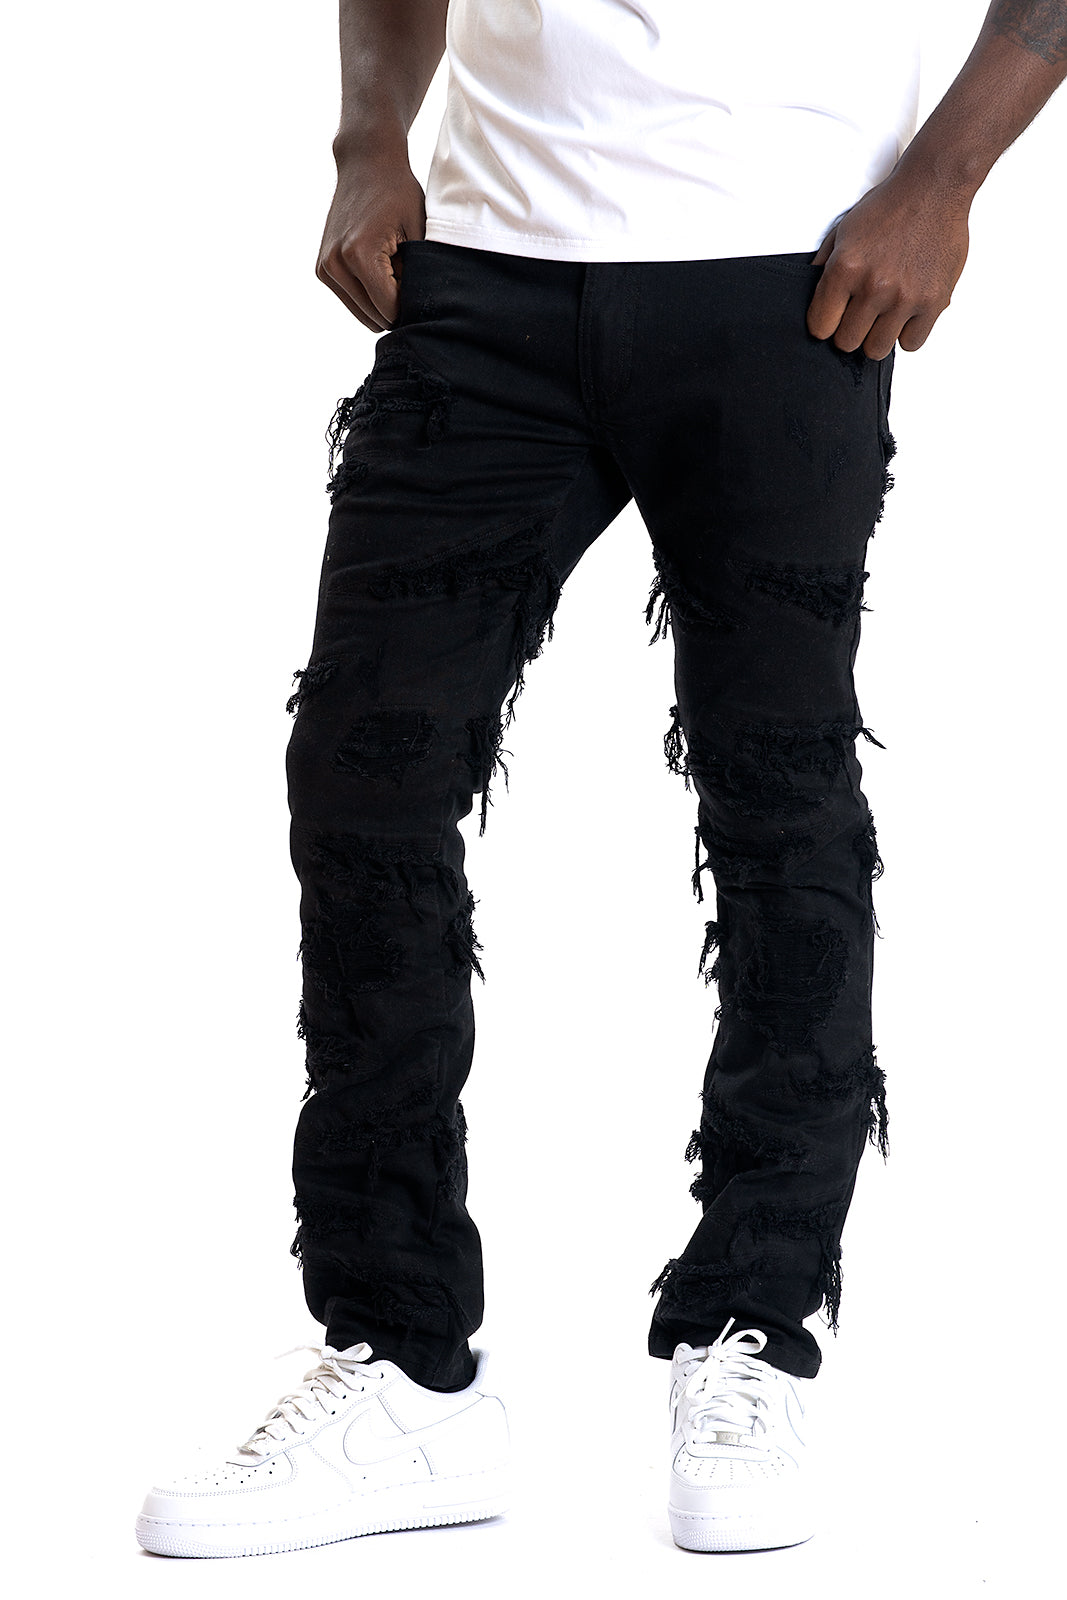 M1956 Lombardi Jeans - Jet Black